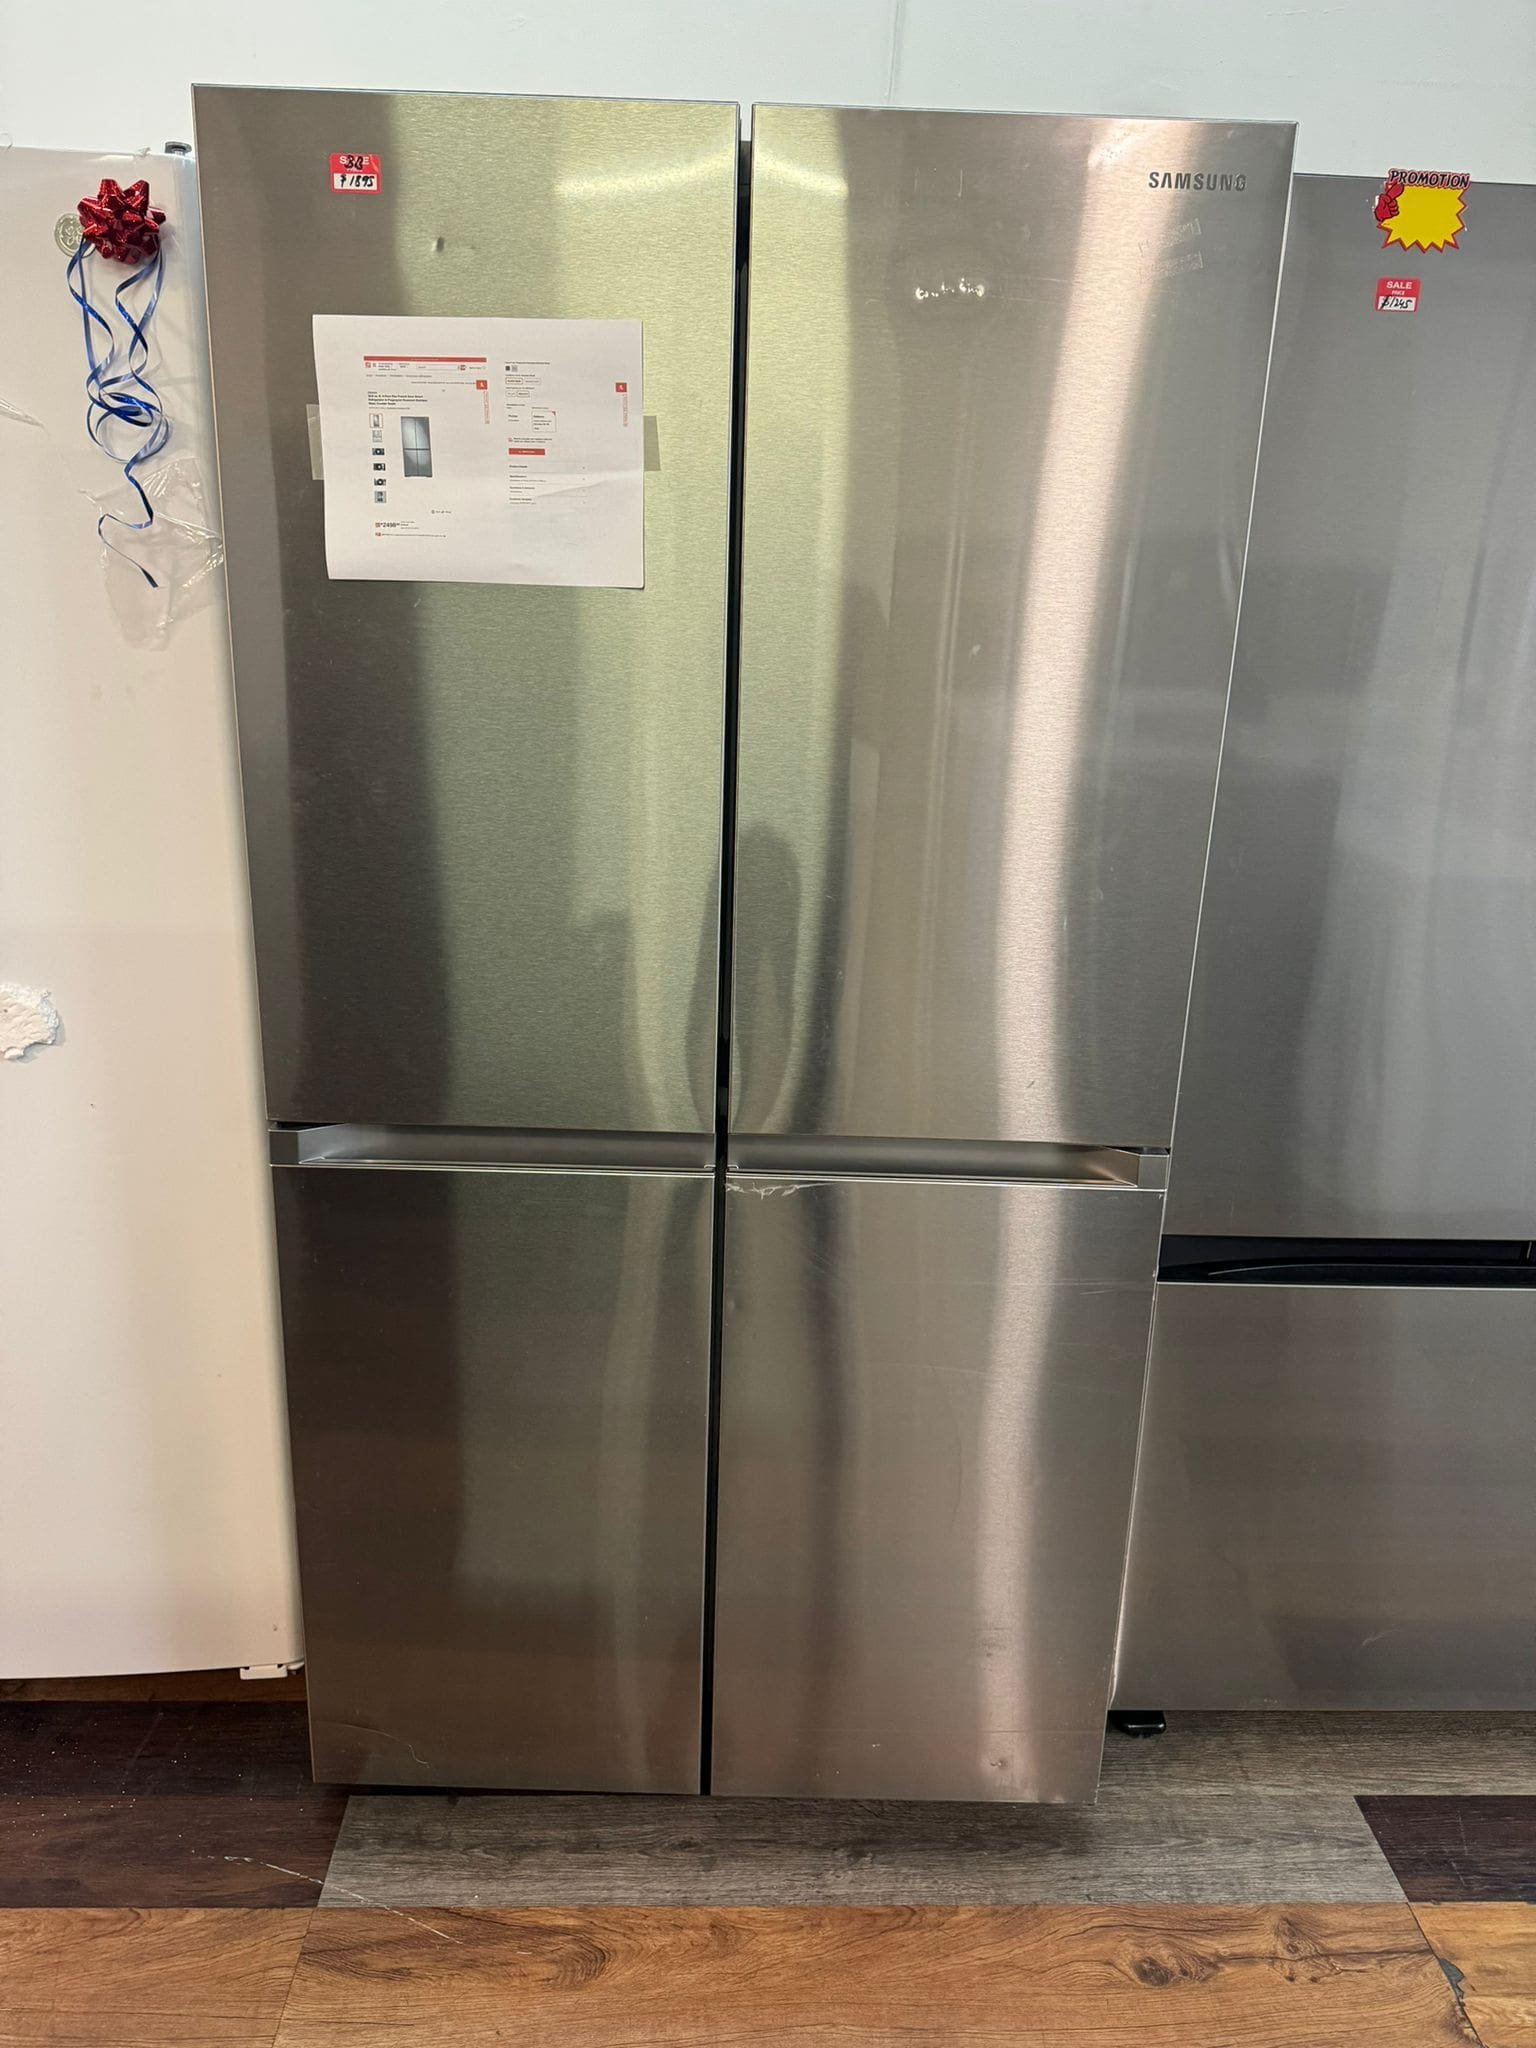 22.8 cu. ft. 4-Door Flex French Door Smart Refrigerator in Stainless Steel, Counter Depth – Scratch and Dent